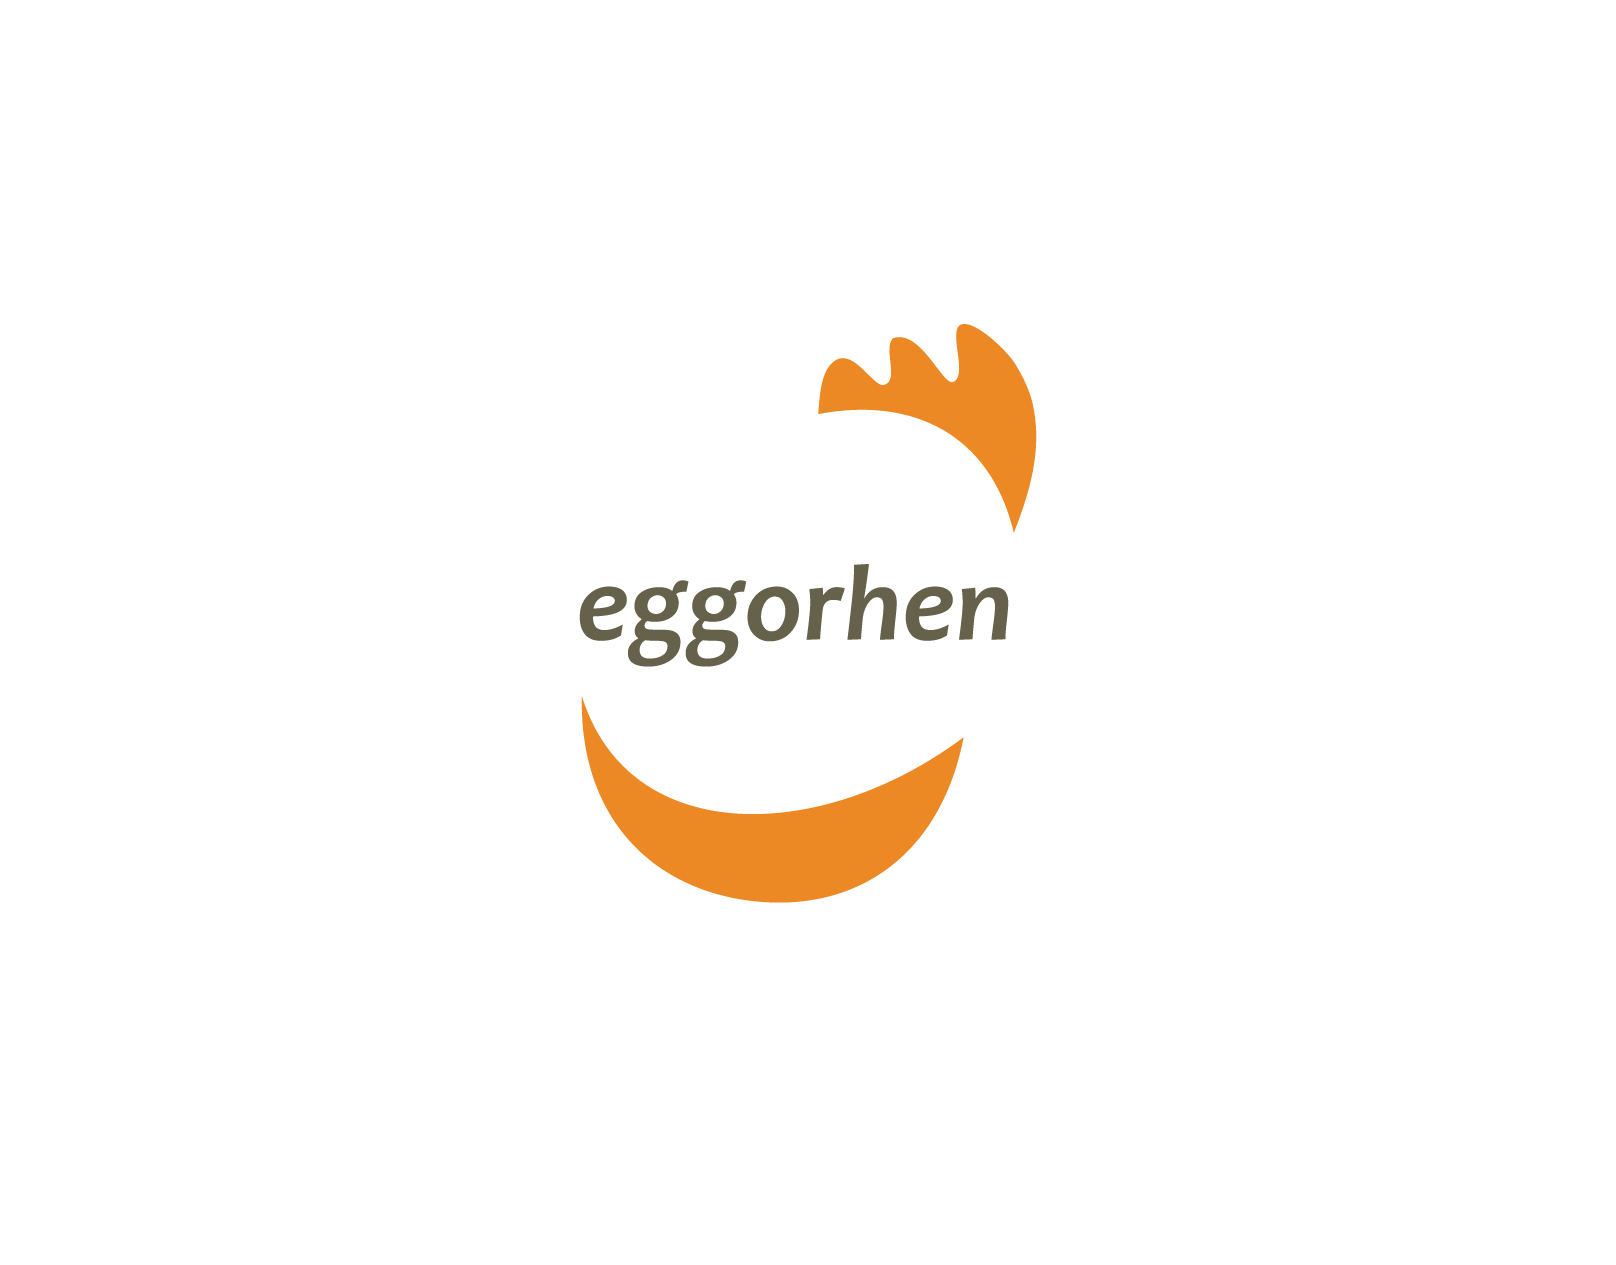 eggorhen